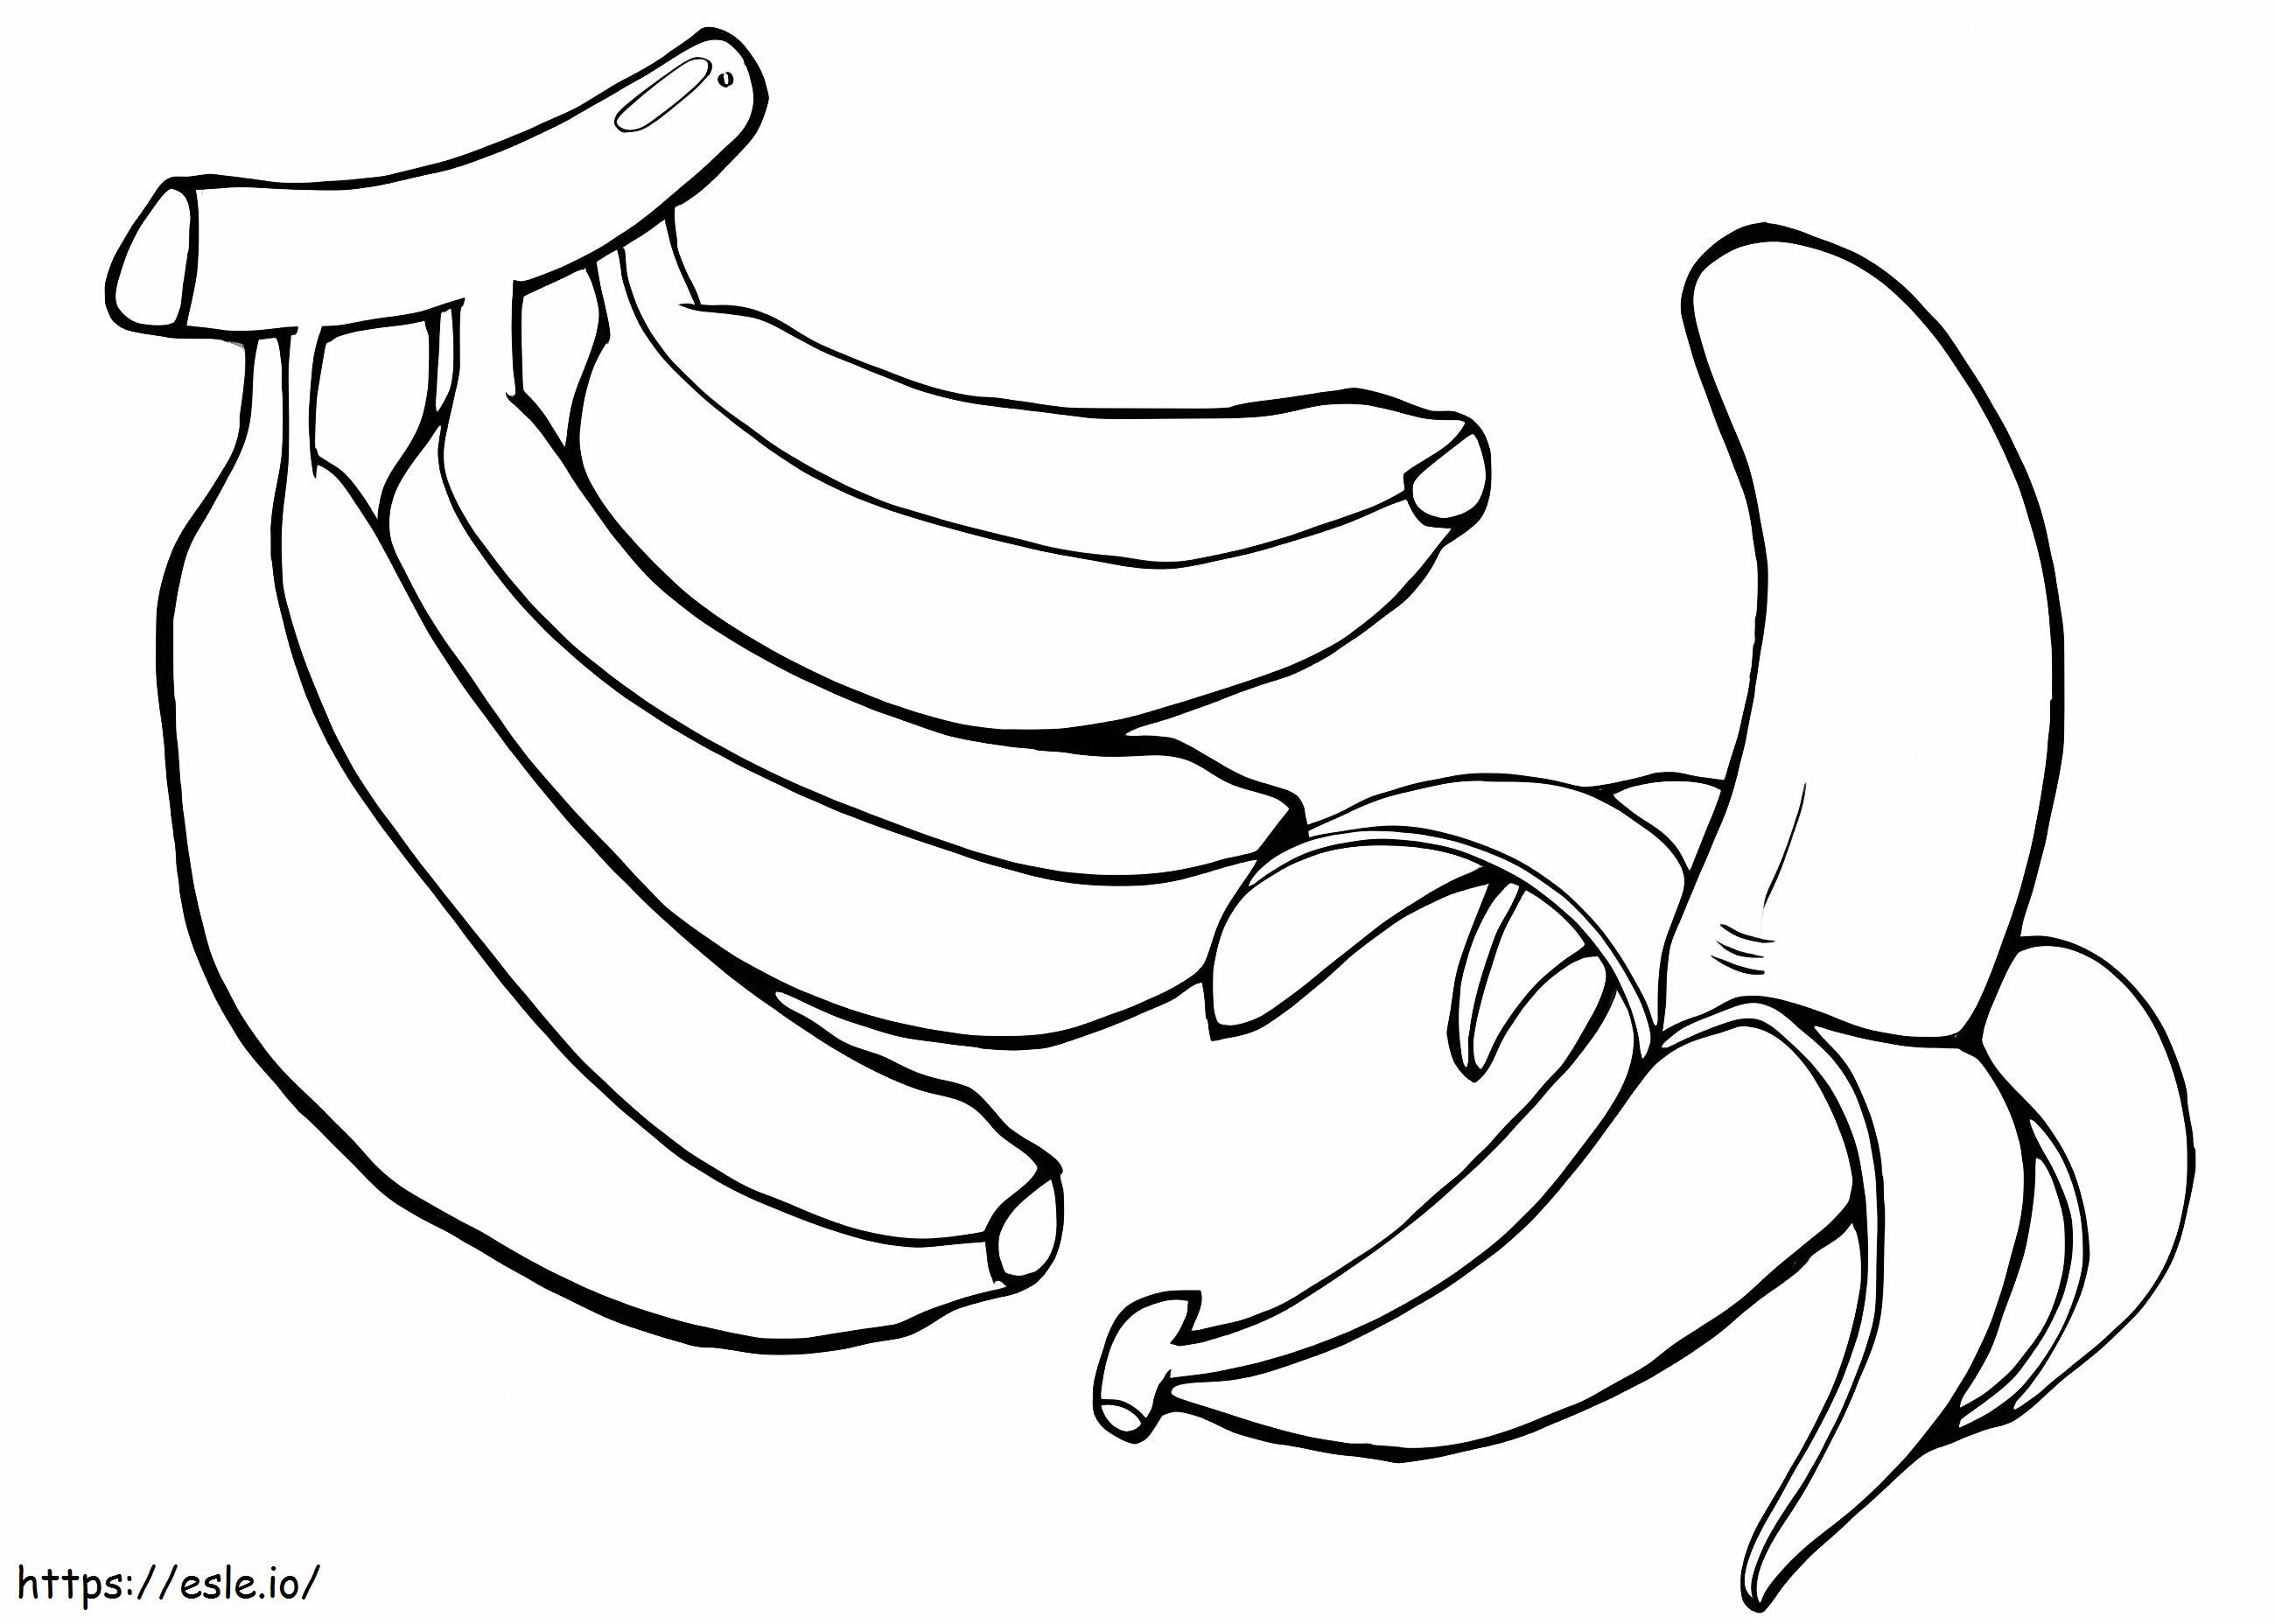 Bündel Bananen und eine geschälte Banane ausmalbilder